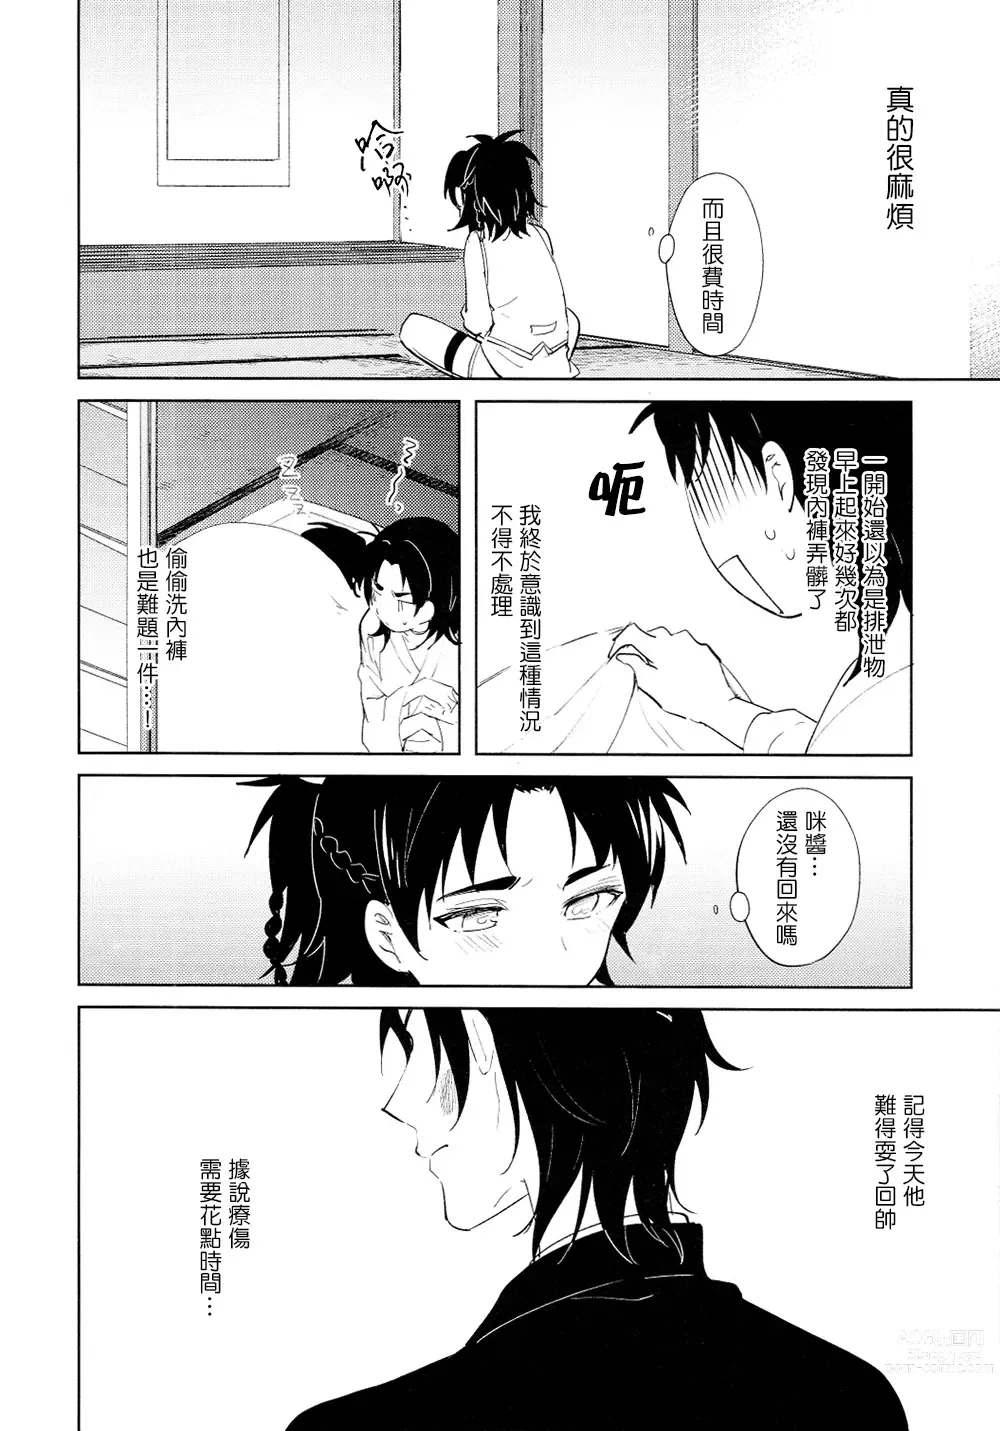 Page 3 of doujinshi 从一个人变成两个人